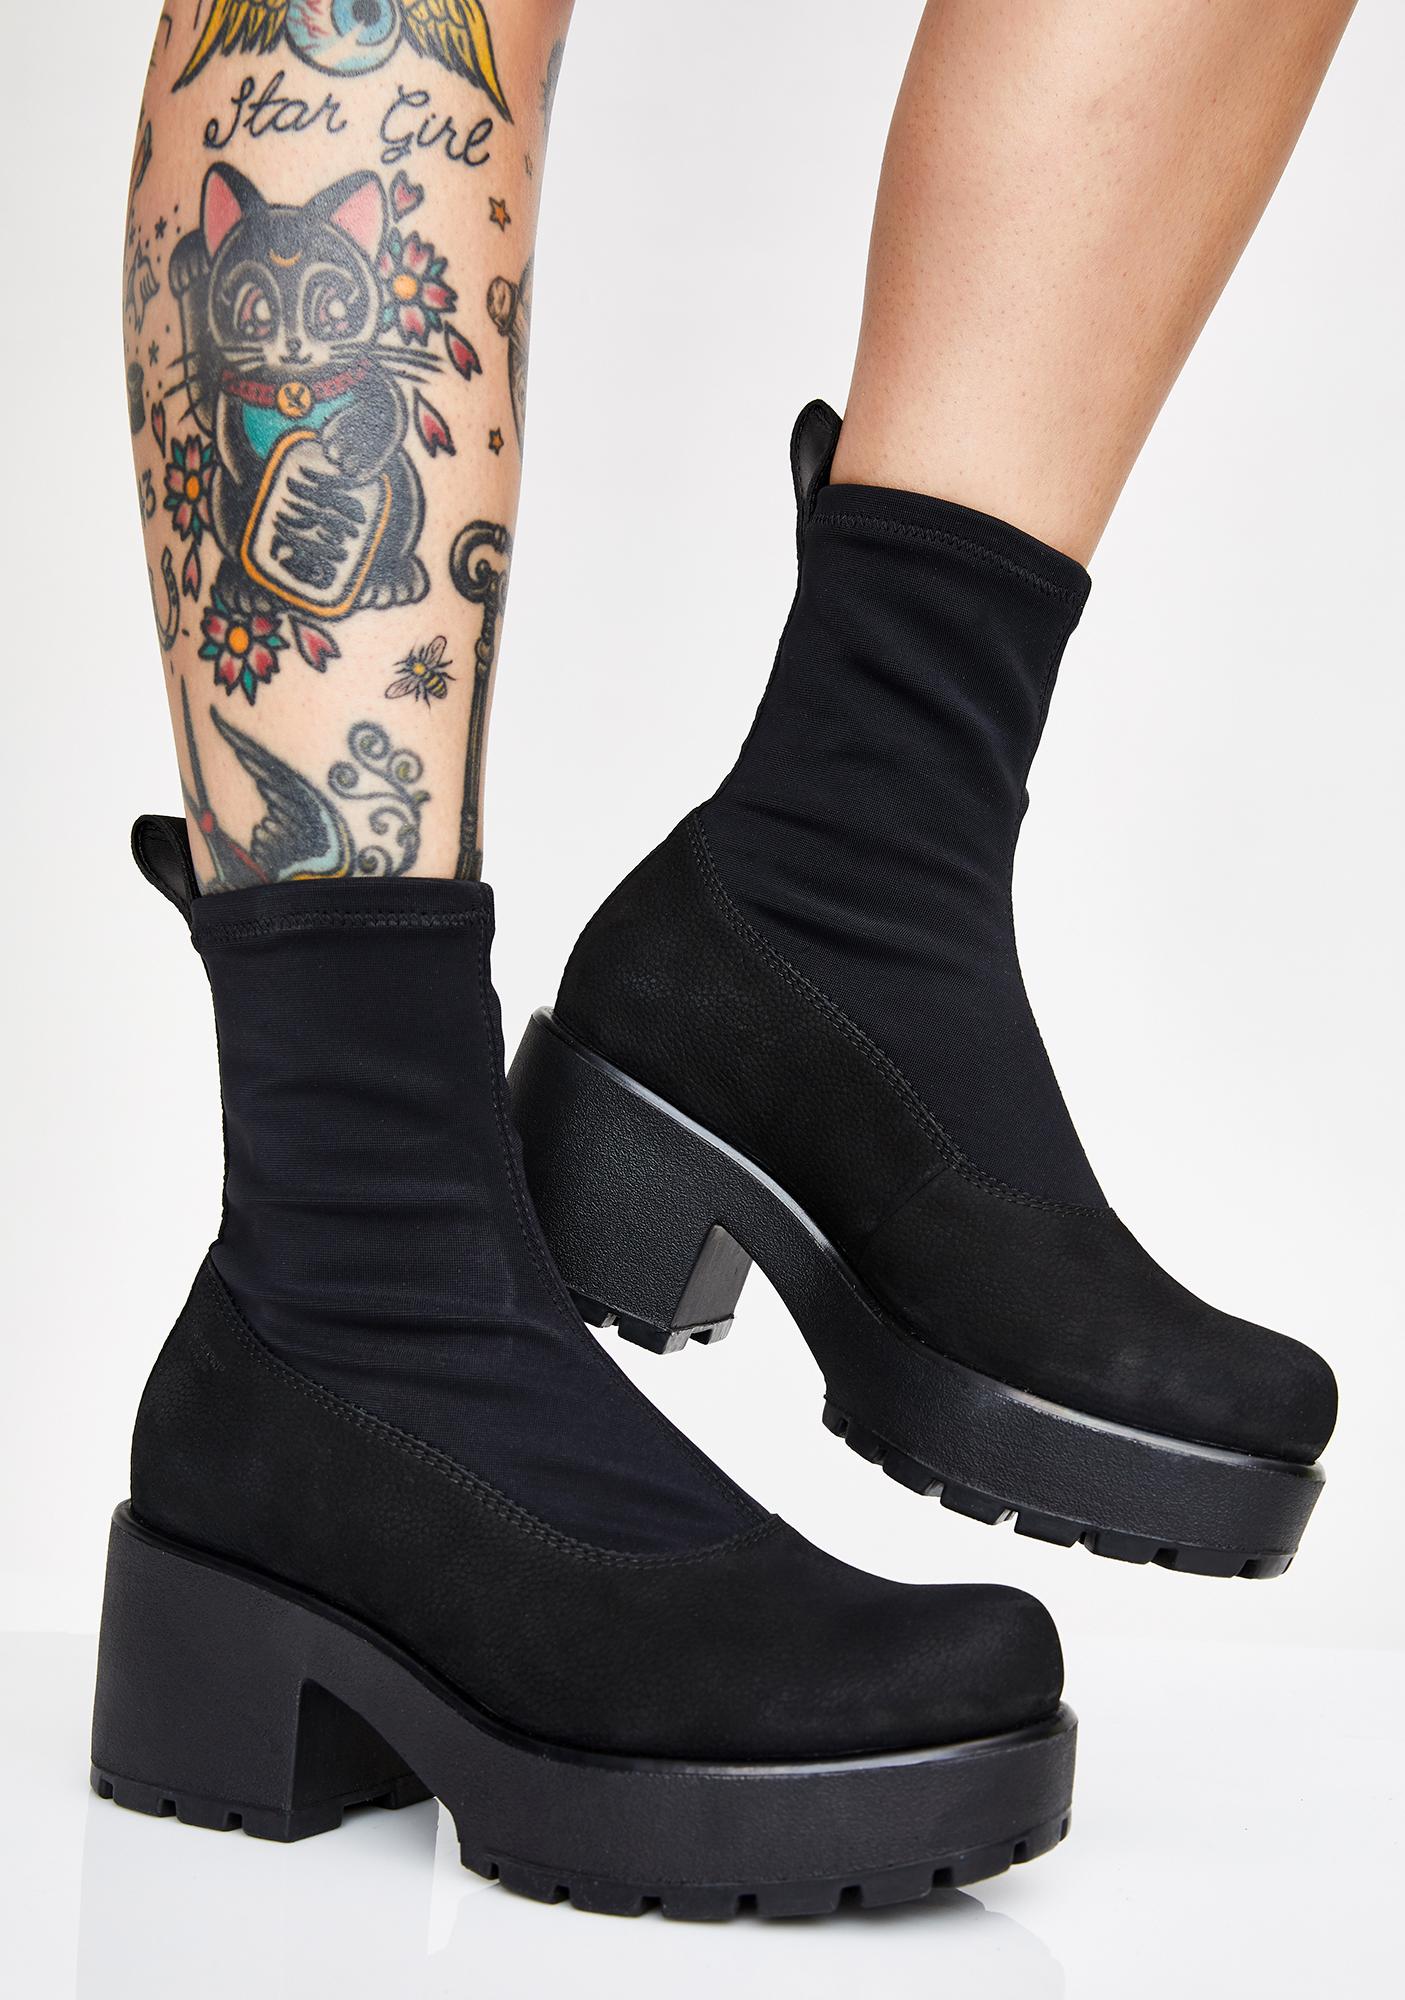 vagabond sock boots